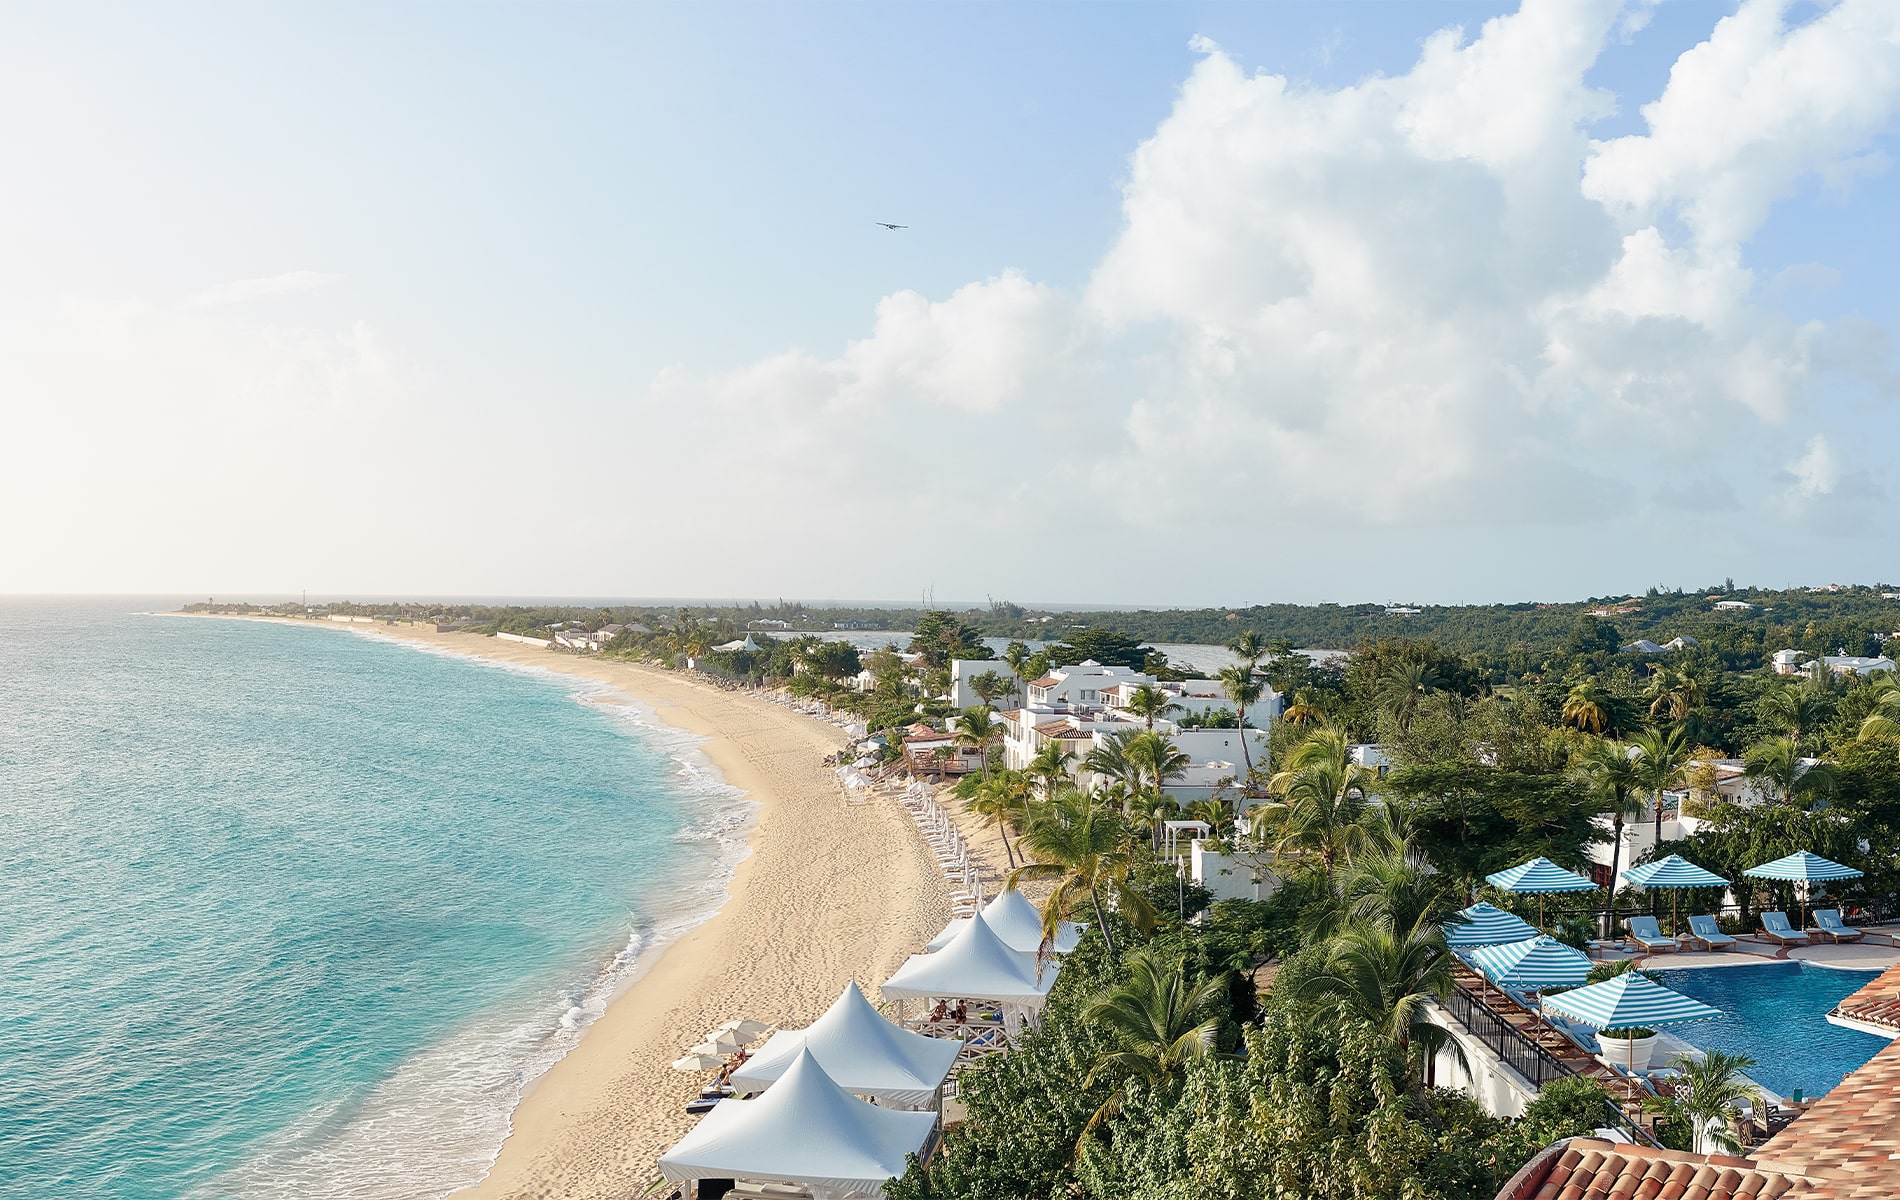 French West Indies, La Samanna, Belmond Hotels, La Samanna Belmond Hotel